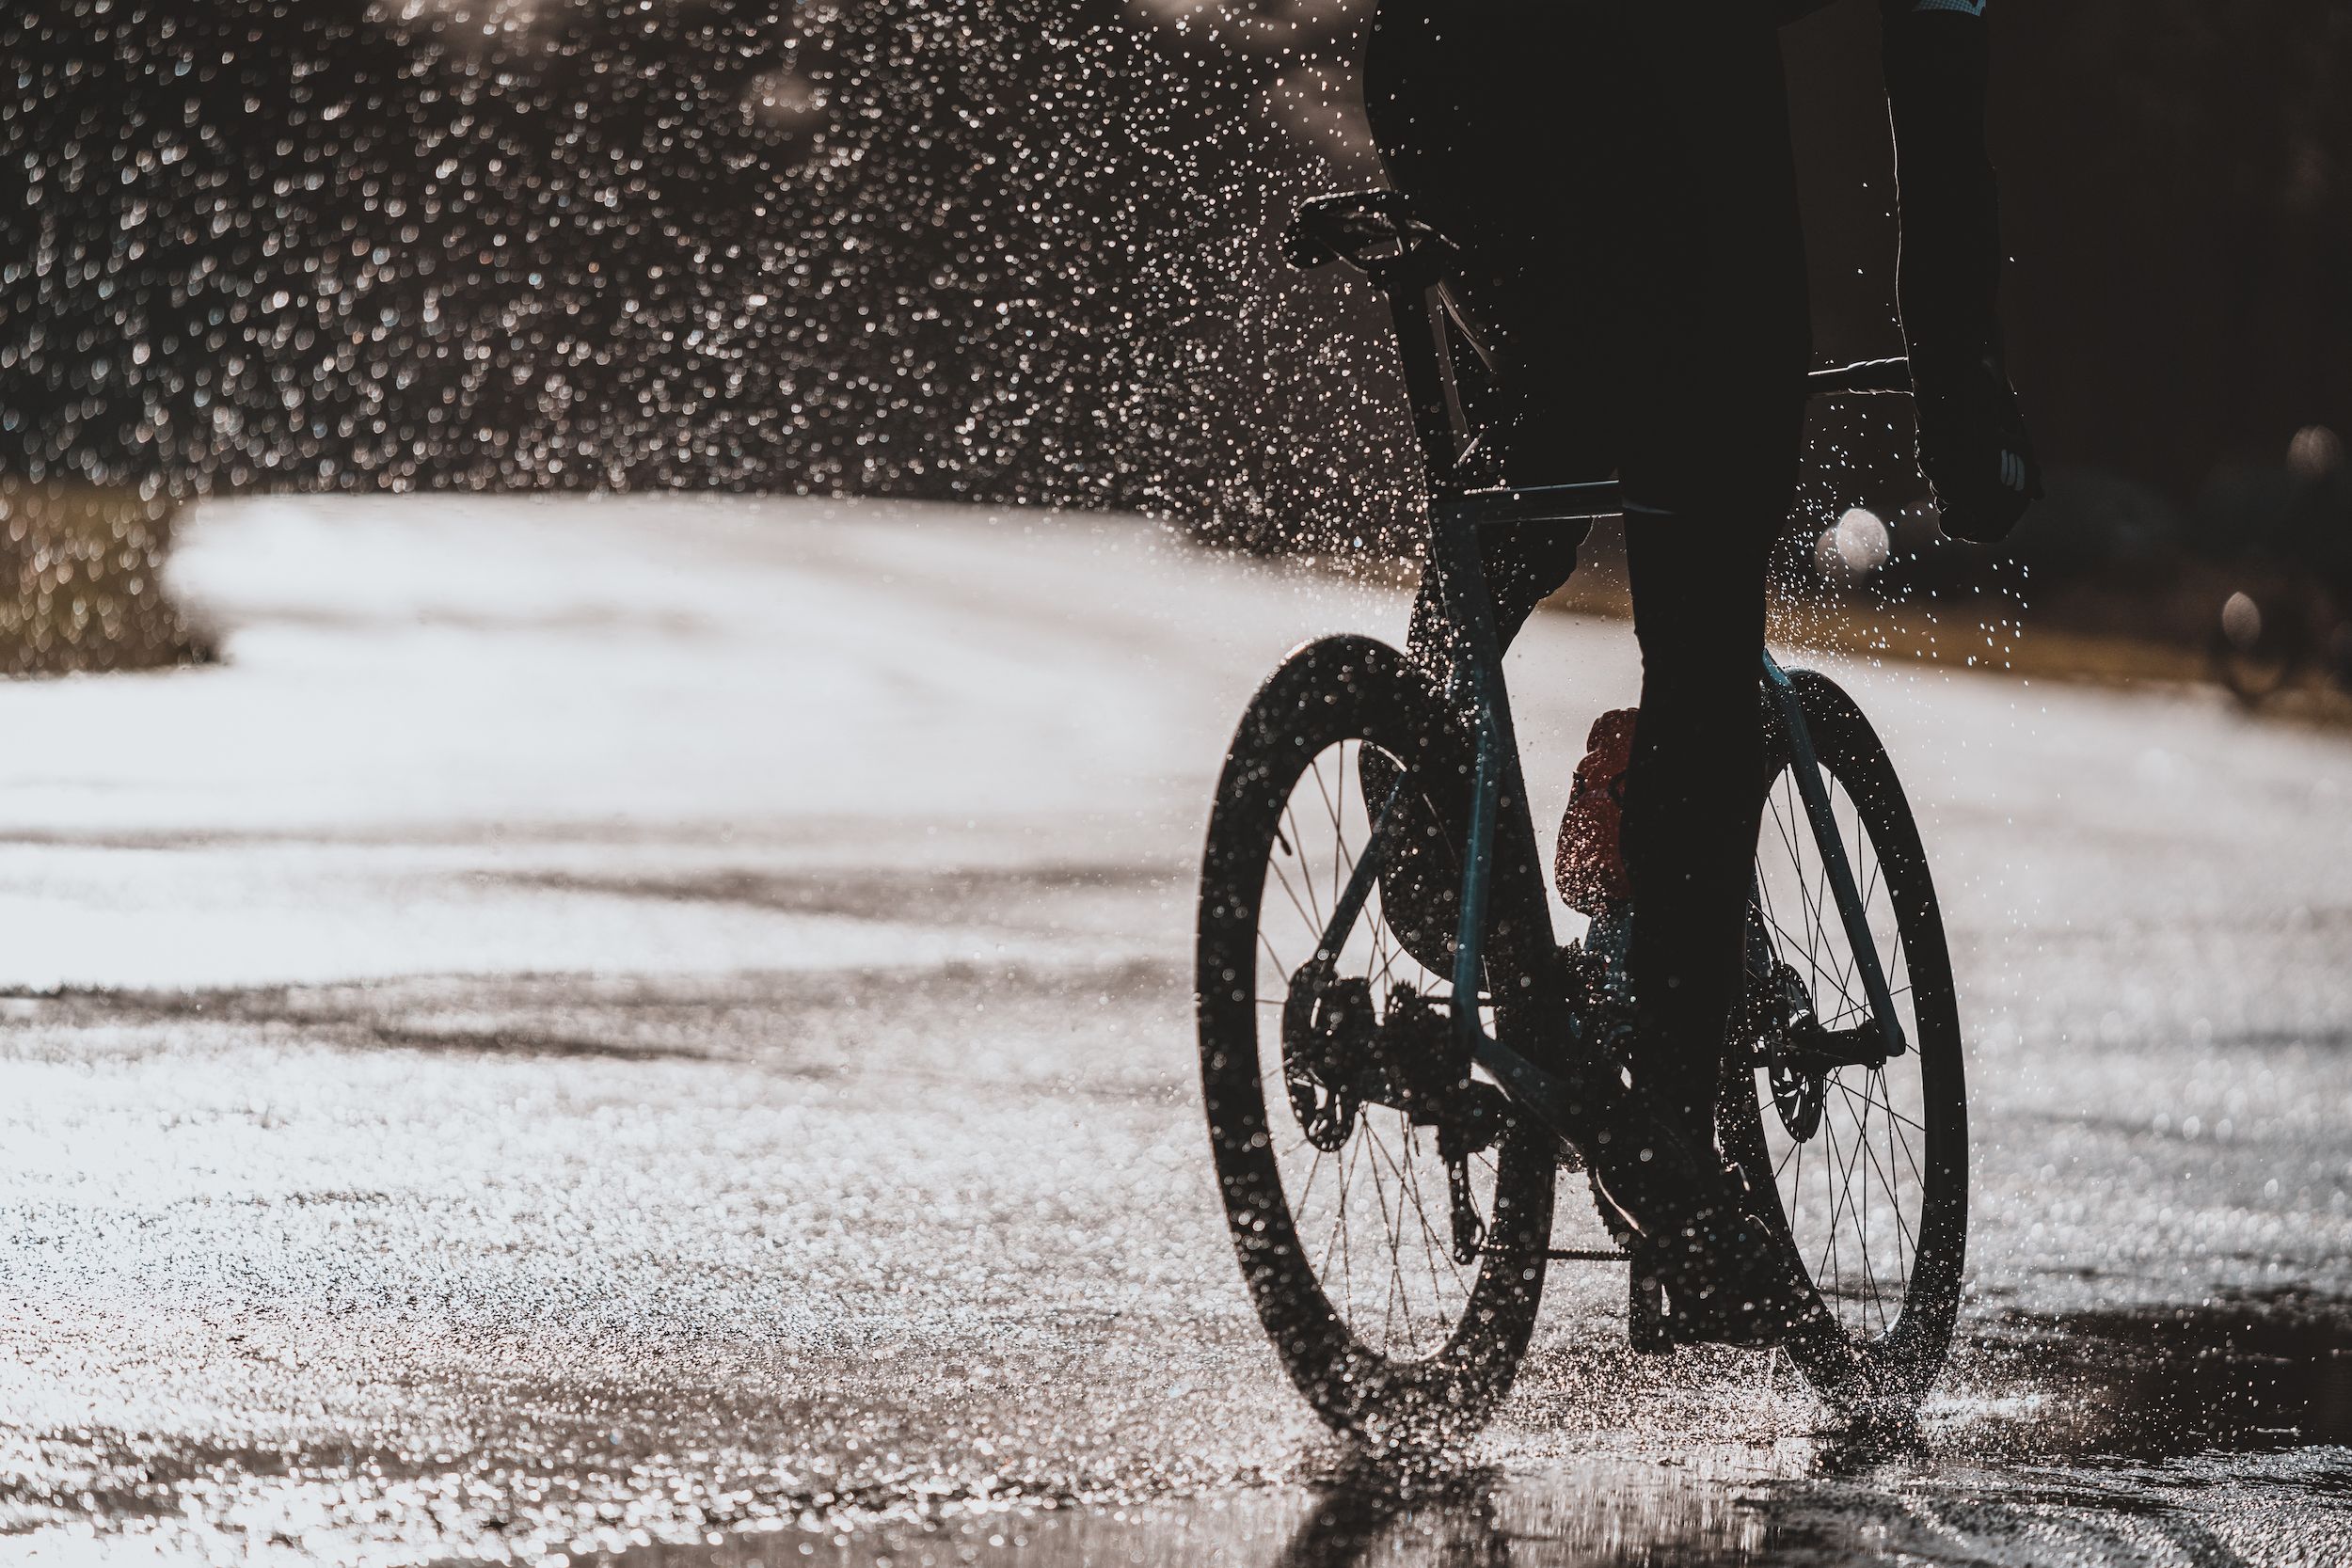 Ontwaken Uitstekend Verbeelding De beste regenjassen voor het wielrennen in slecht weer